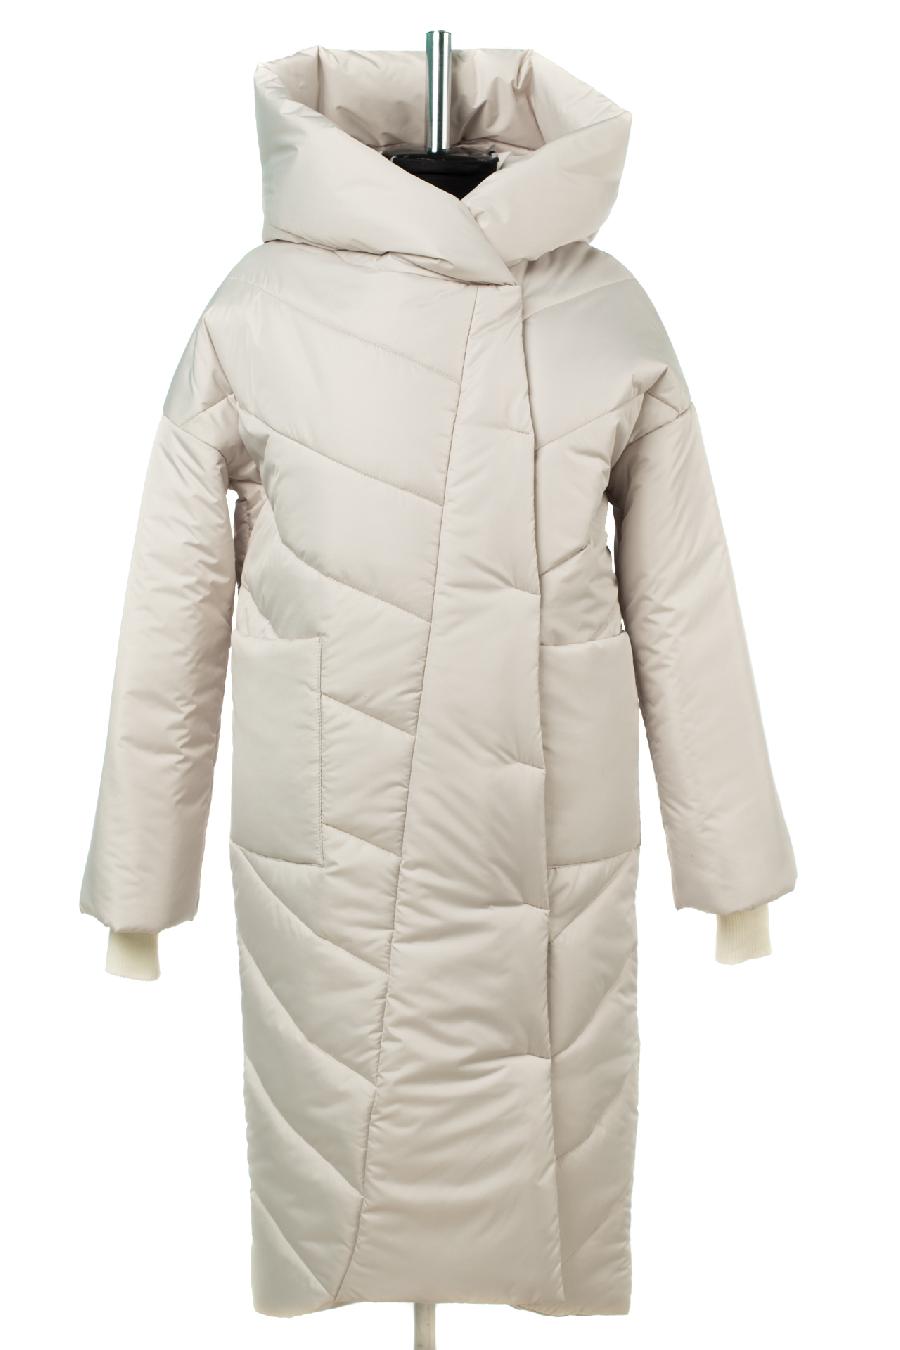 05-2062 Куртка женская зимняя (синтепон 300) Плащевка серо-белый